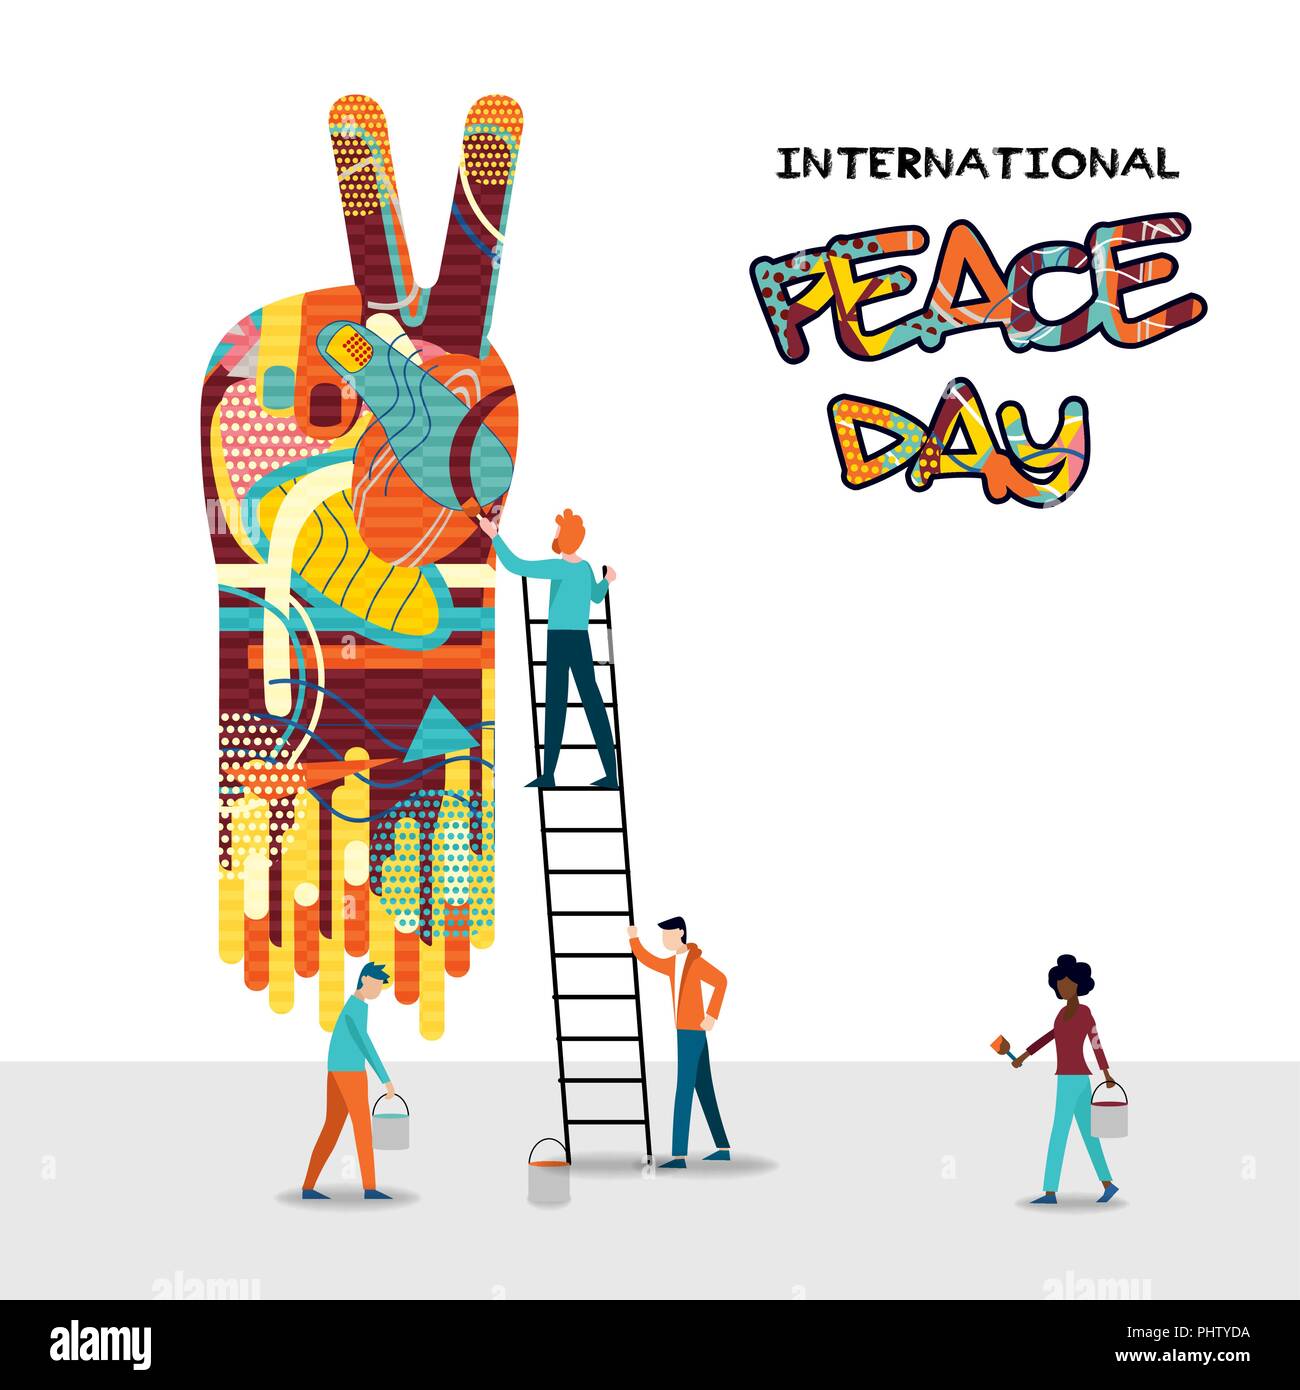 La pace internazionale carta giornaliera per aiutare il mondo e la cultura dell'unità. Varie Gruppo amico teamwork illustrazione. EPS10 vettore. Illustrazione Vettoriale